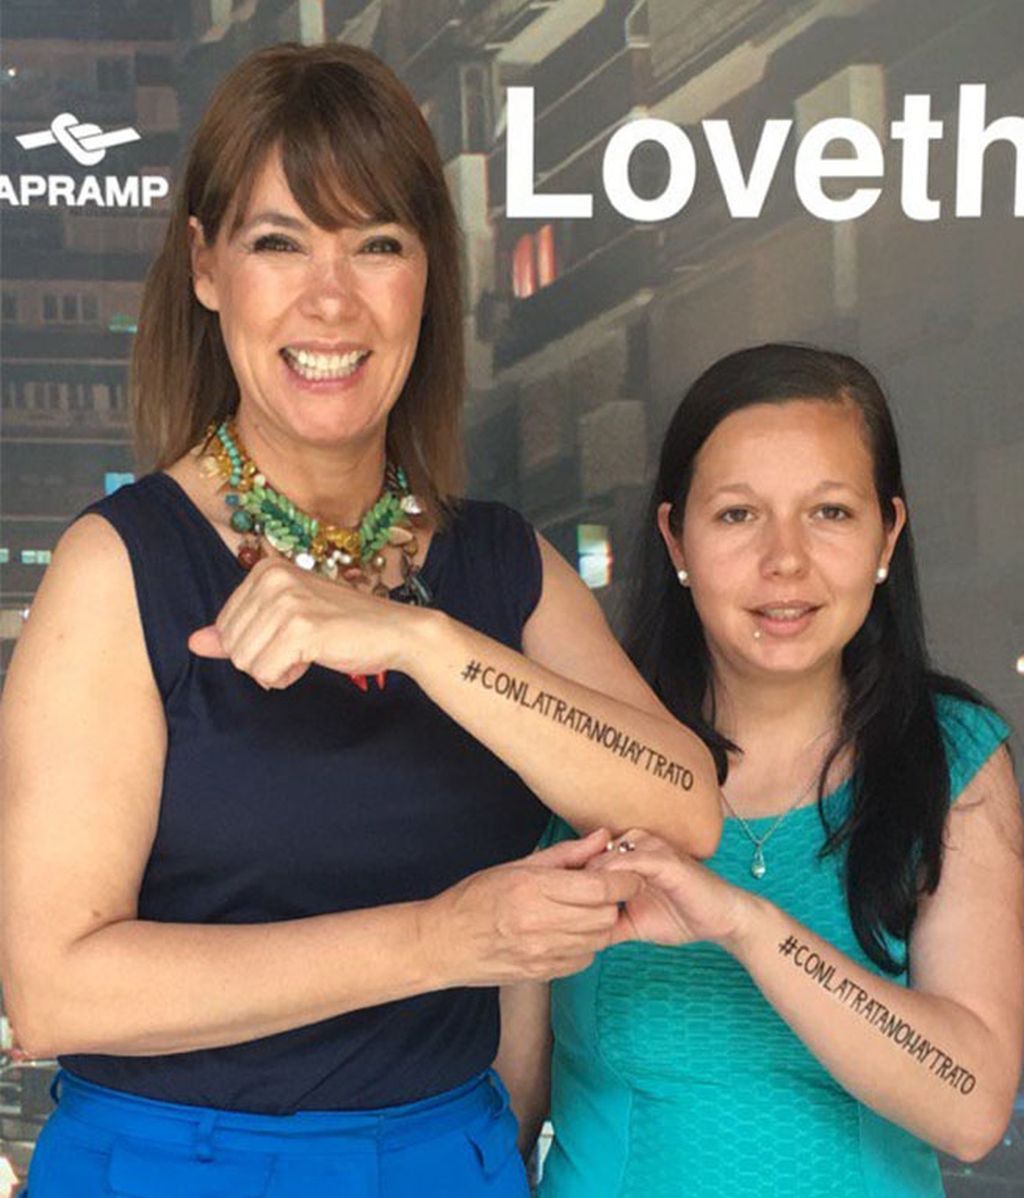 'Loveth' es la nueva campaña de APRAMP